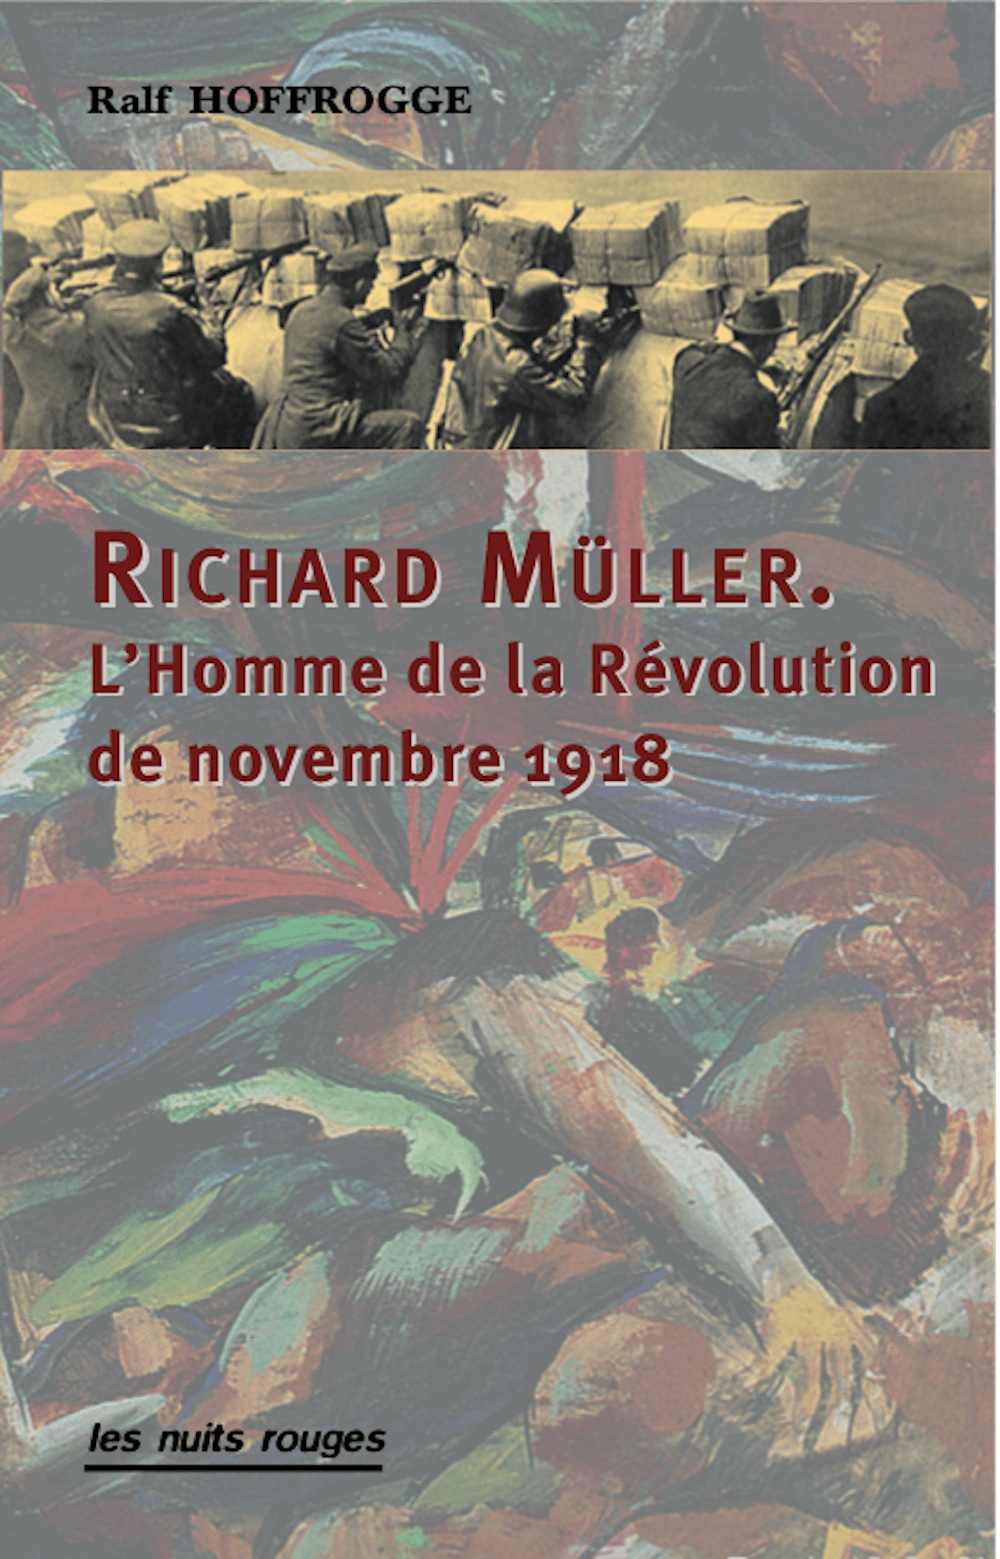 Résultat de recherche d'images pour "richard müller l'homme de la révolution de novembre 1918"